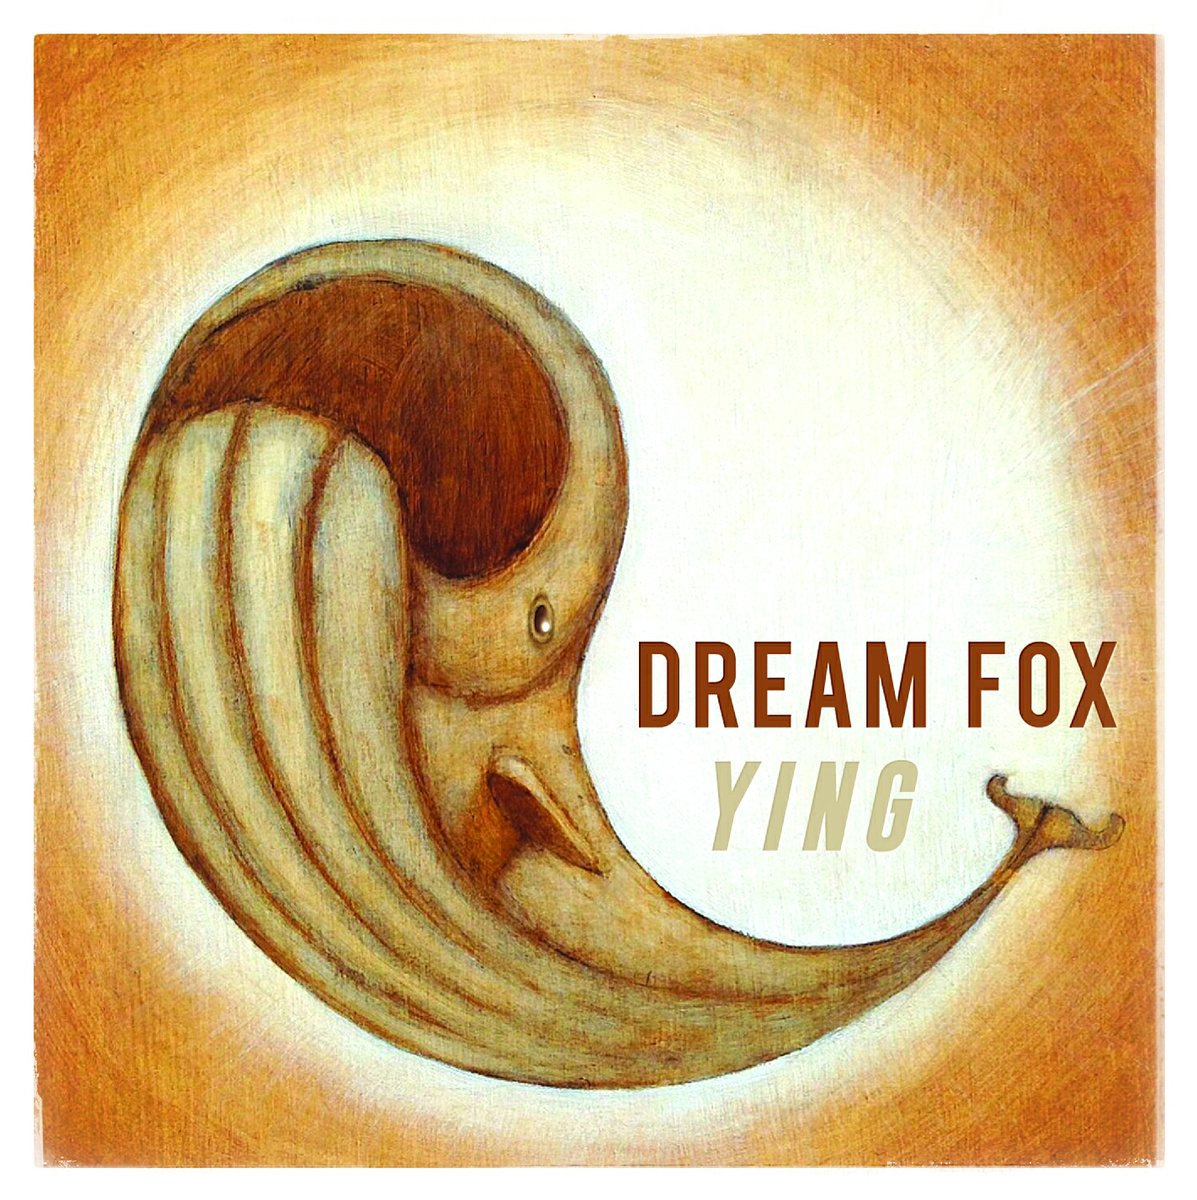 Dreaming Fox.